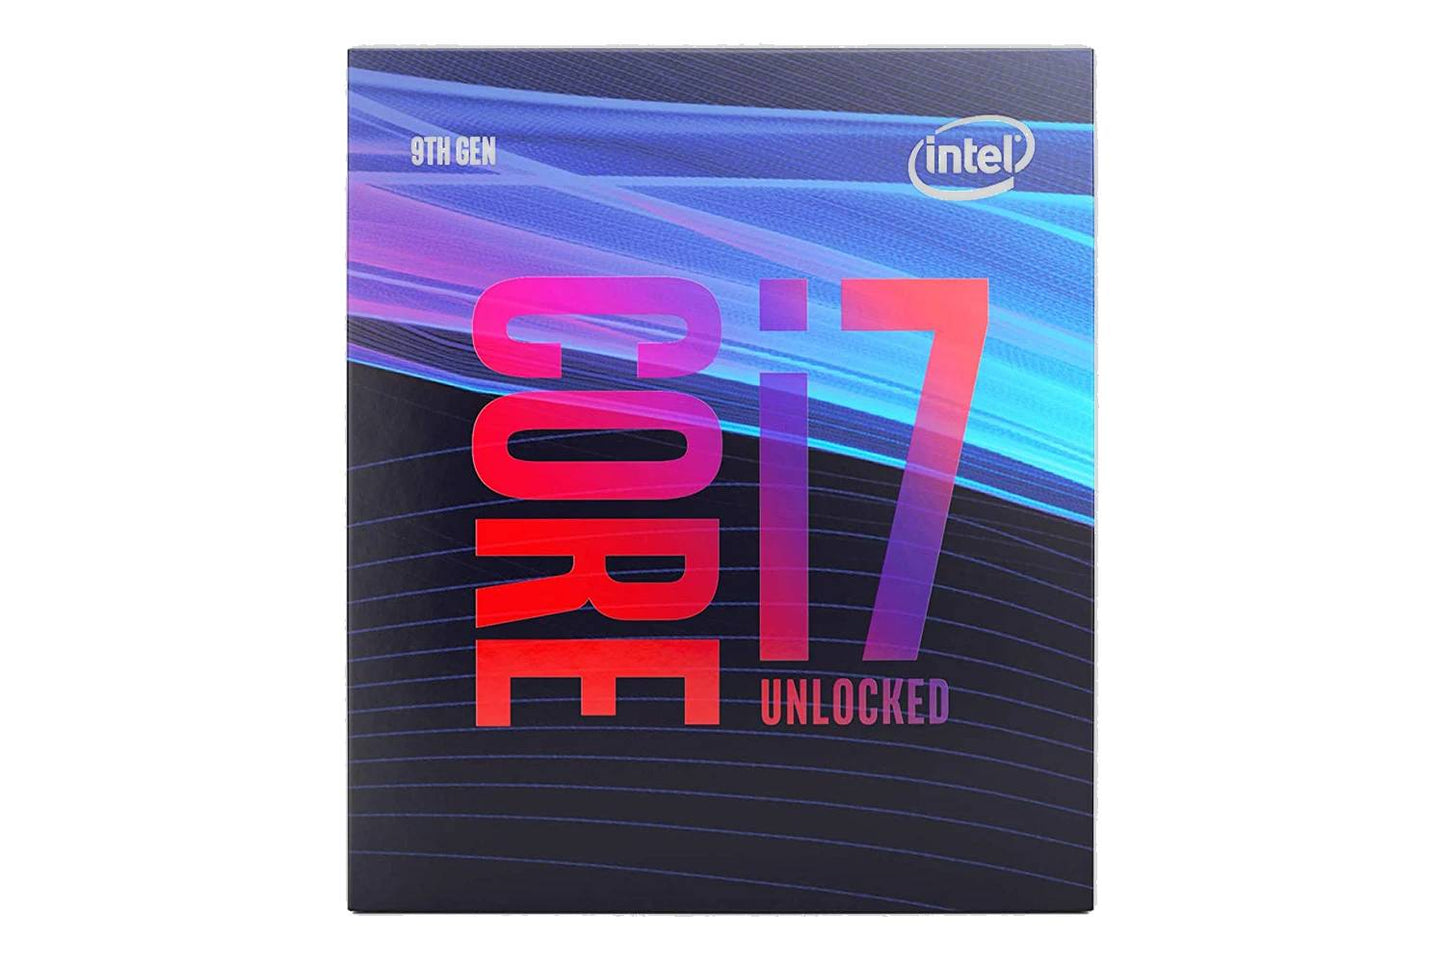 Intel Core i7 9700 Desktop 9th Generation Processor